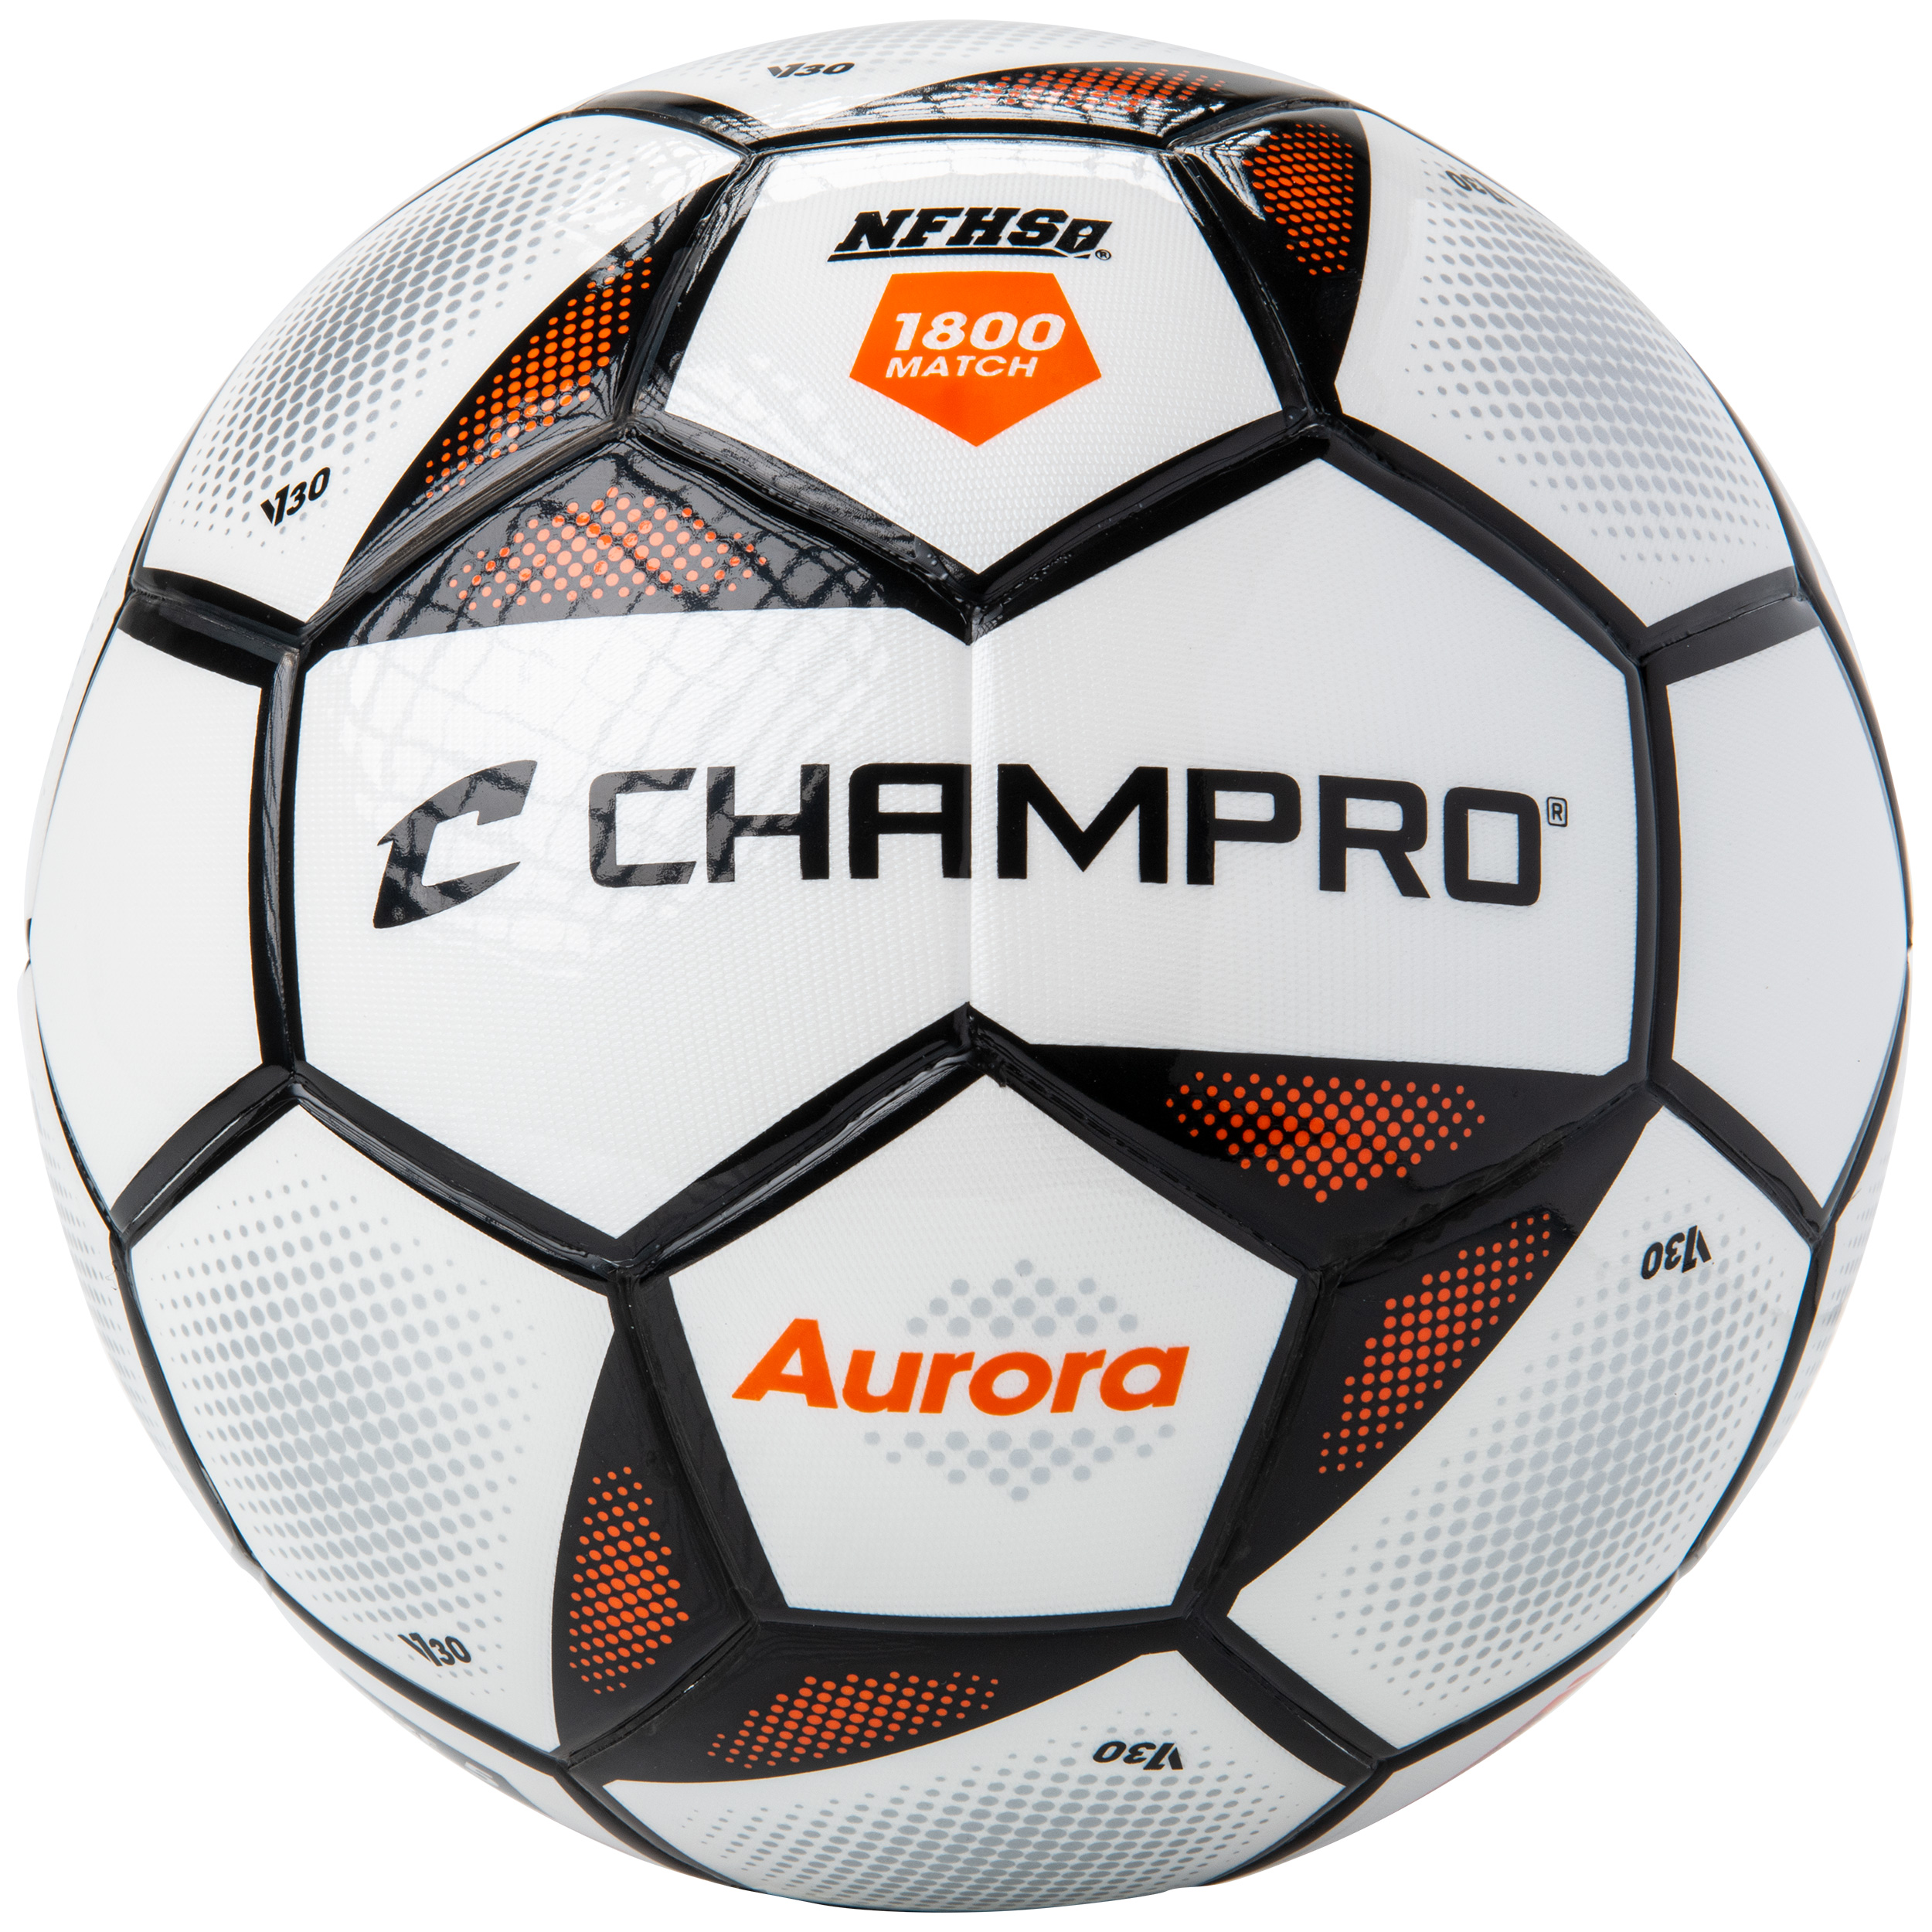 soccer-equipment-soccer-balls